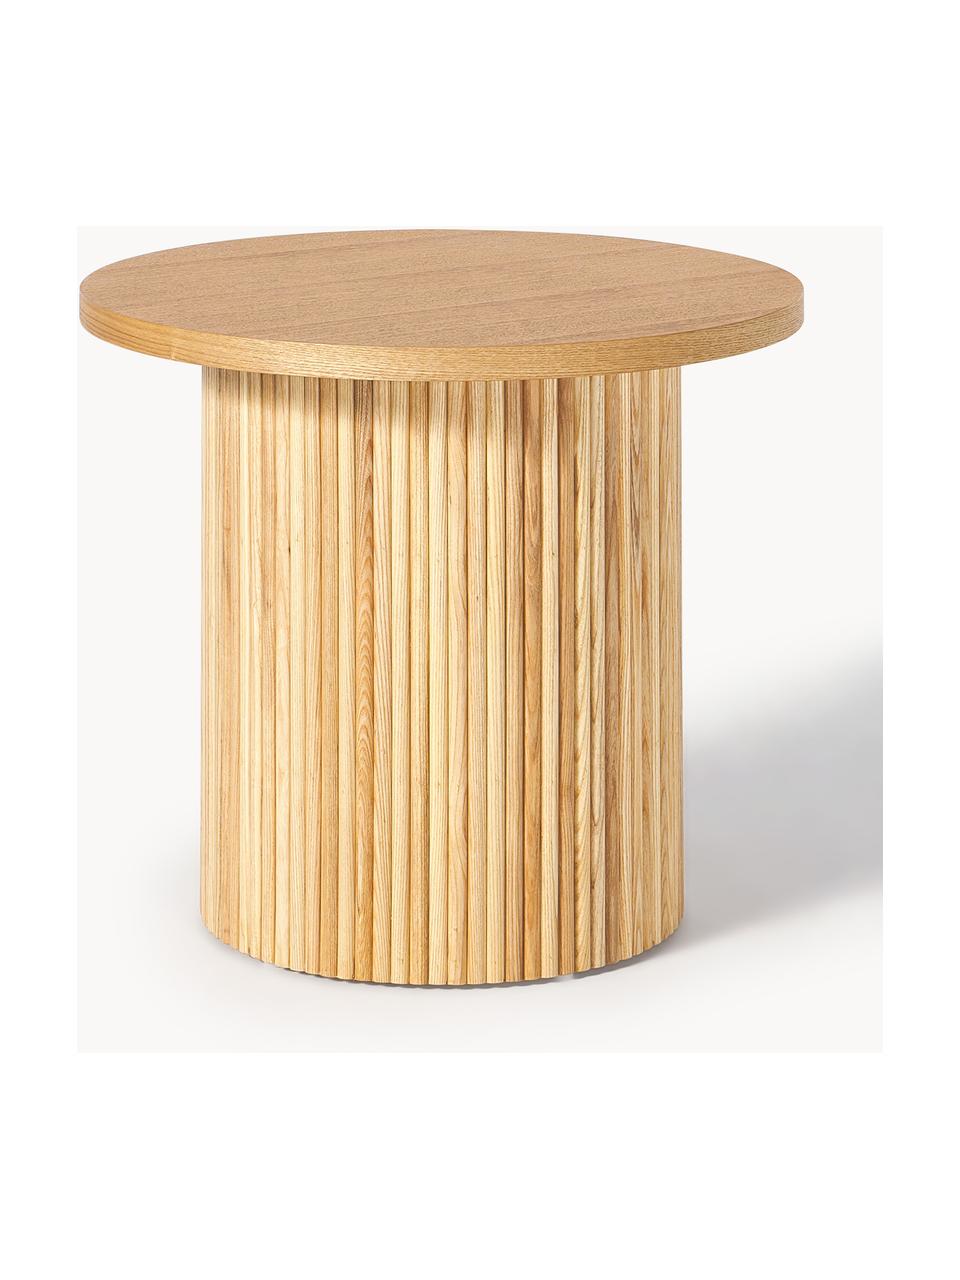 Kulatý dřevěný odkládací stolek Nele, Dřevovláknitá deska střední hustoty (MDF) s jasanovou dýhou

Tento produkt je vyroben z udržitelných zdrojů dřeva s certifikací FSC®., Světlé jasanové dřevo, Ø 60 cm, V 51 cm